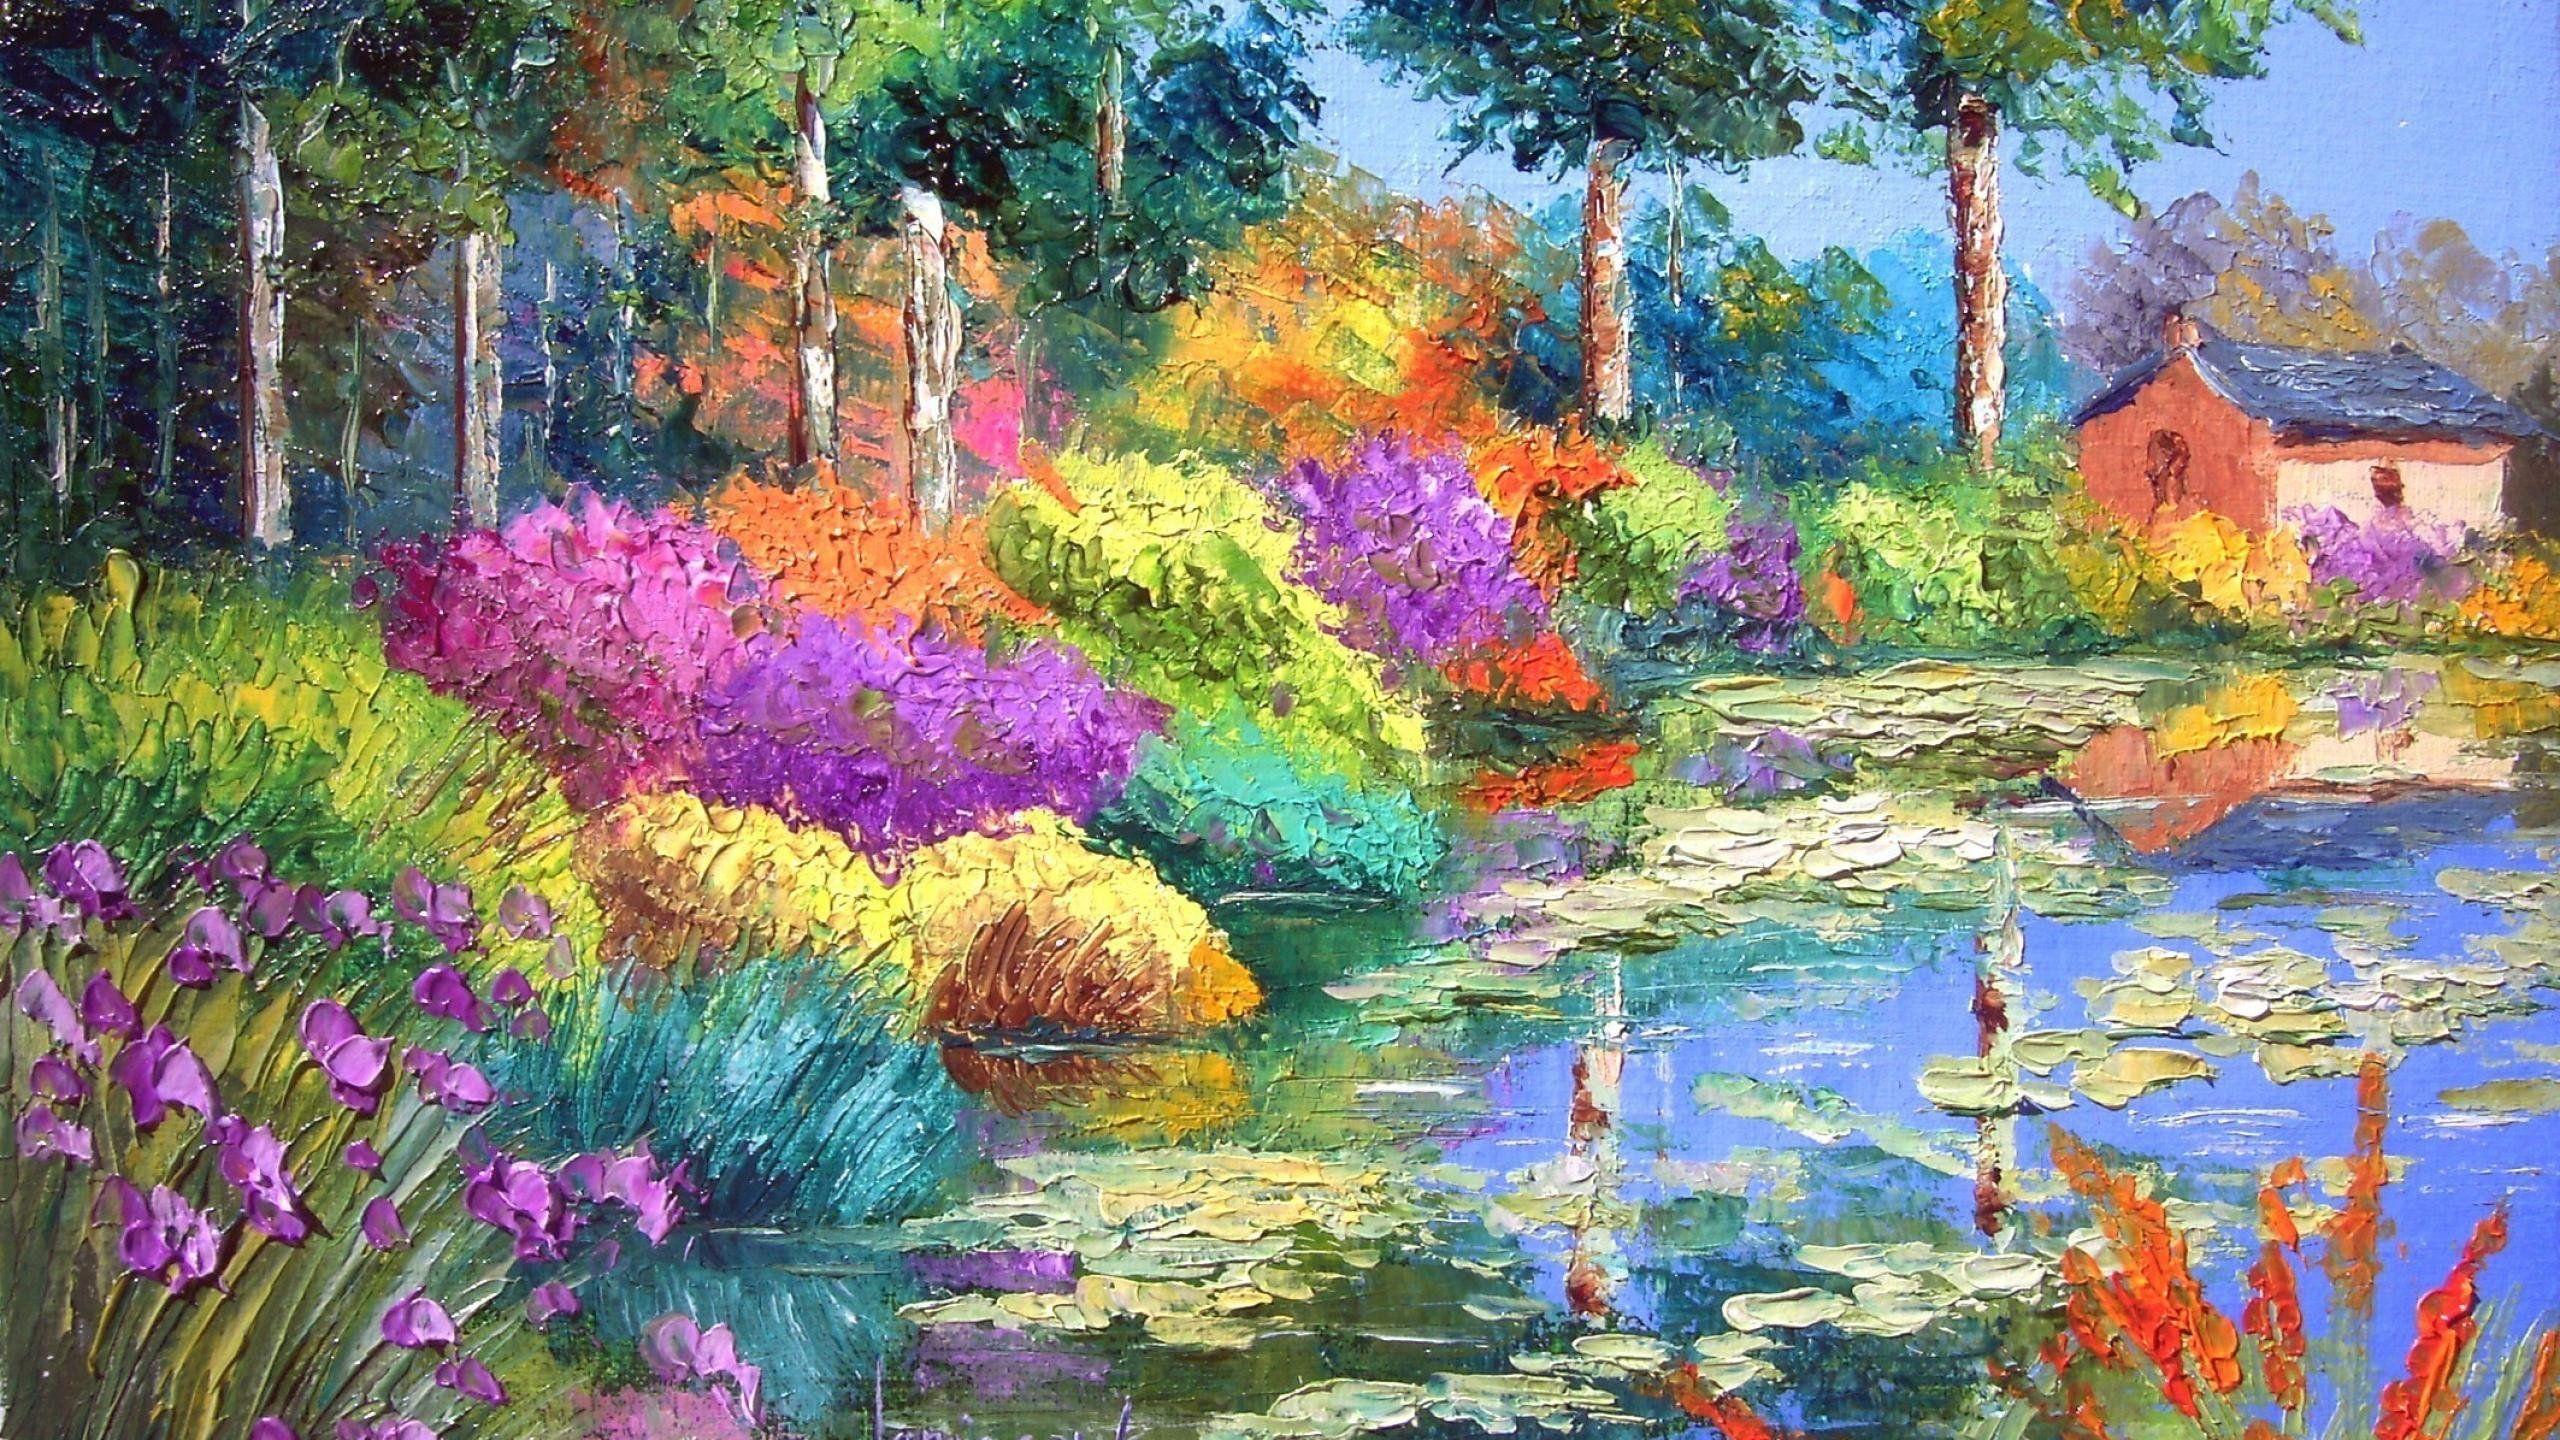 2560x1440 Wallpaper.wiki Tải xuống miễn phí Hình nền đầy màu sắc Jardin Arte Pintura